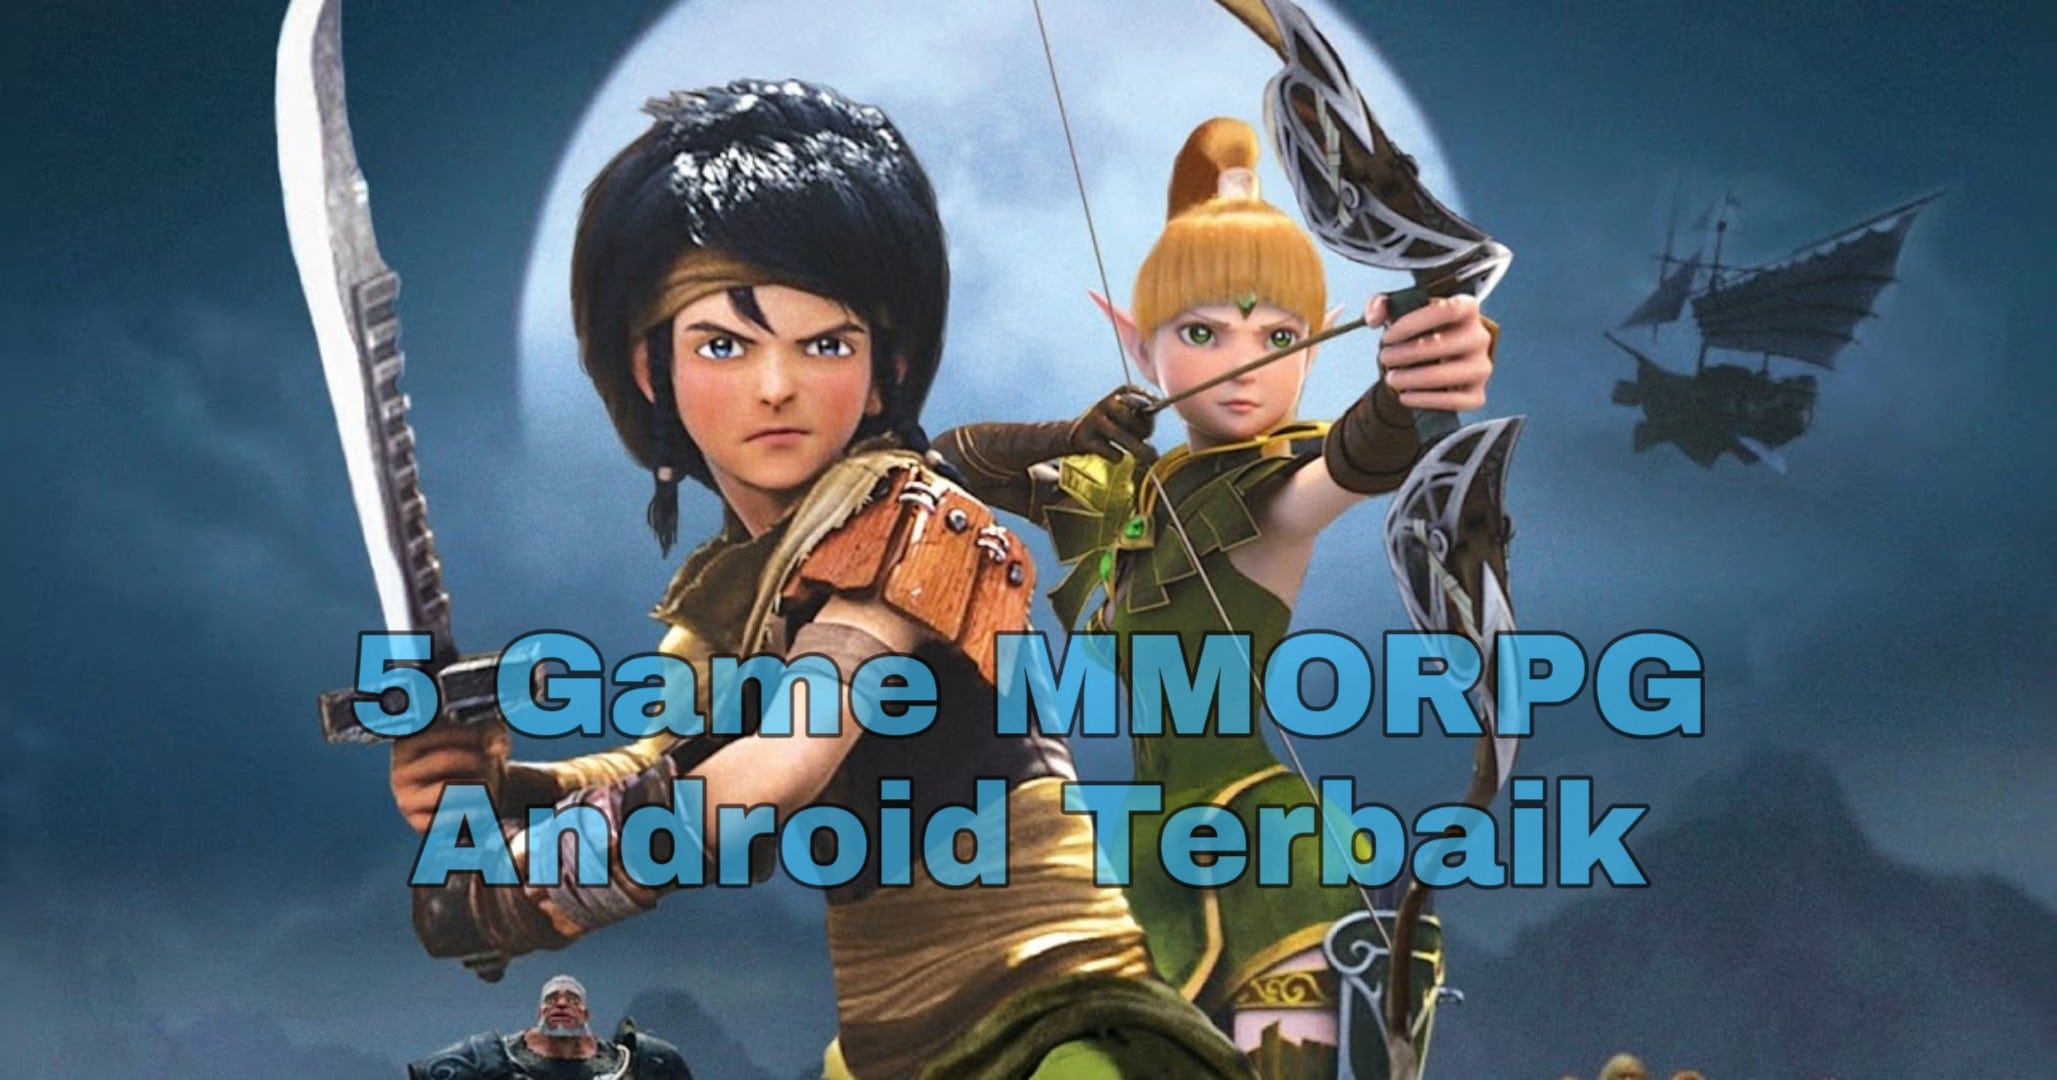 5 Game MMORPG Android Terbaik 2020